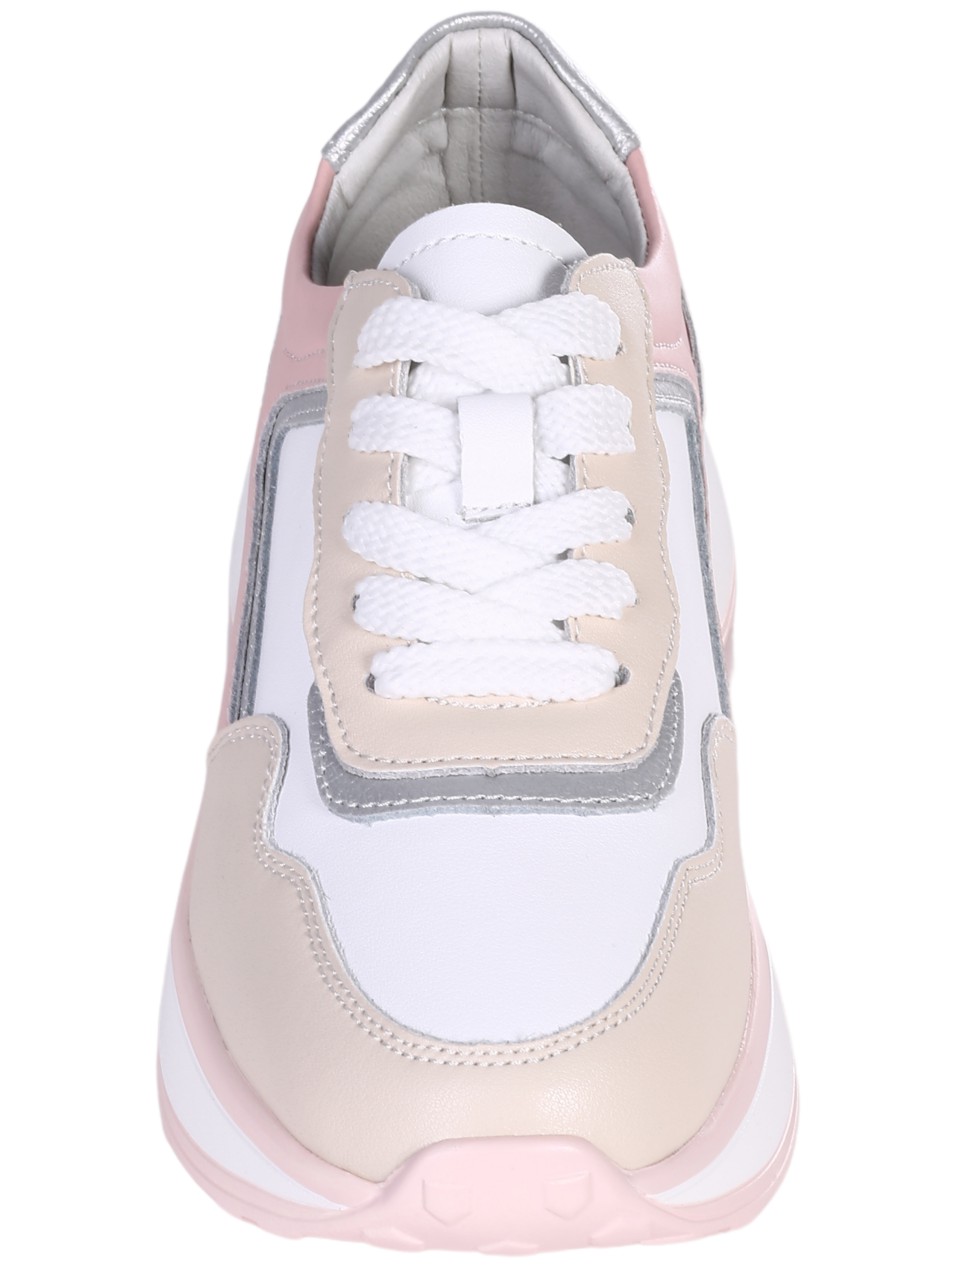 Ежедневни дамски обувки от естествена кожа  в бял/бежов/розов цвят 3AF-24052 white/beige/pink